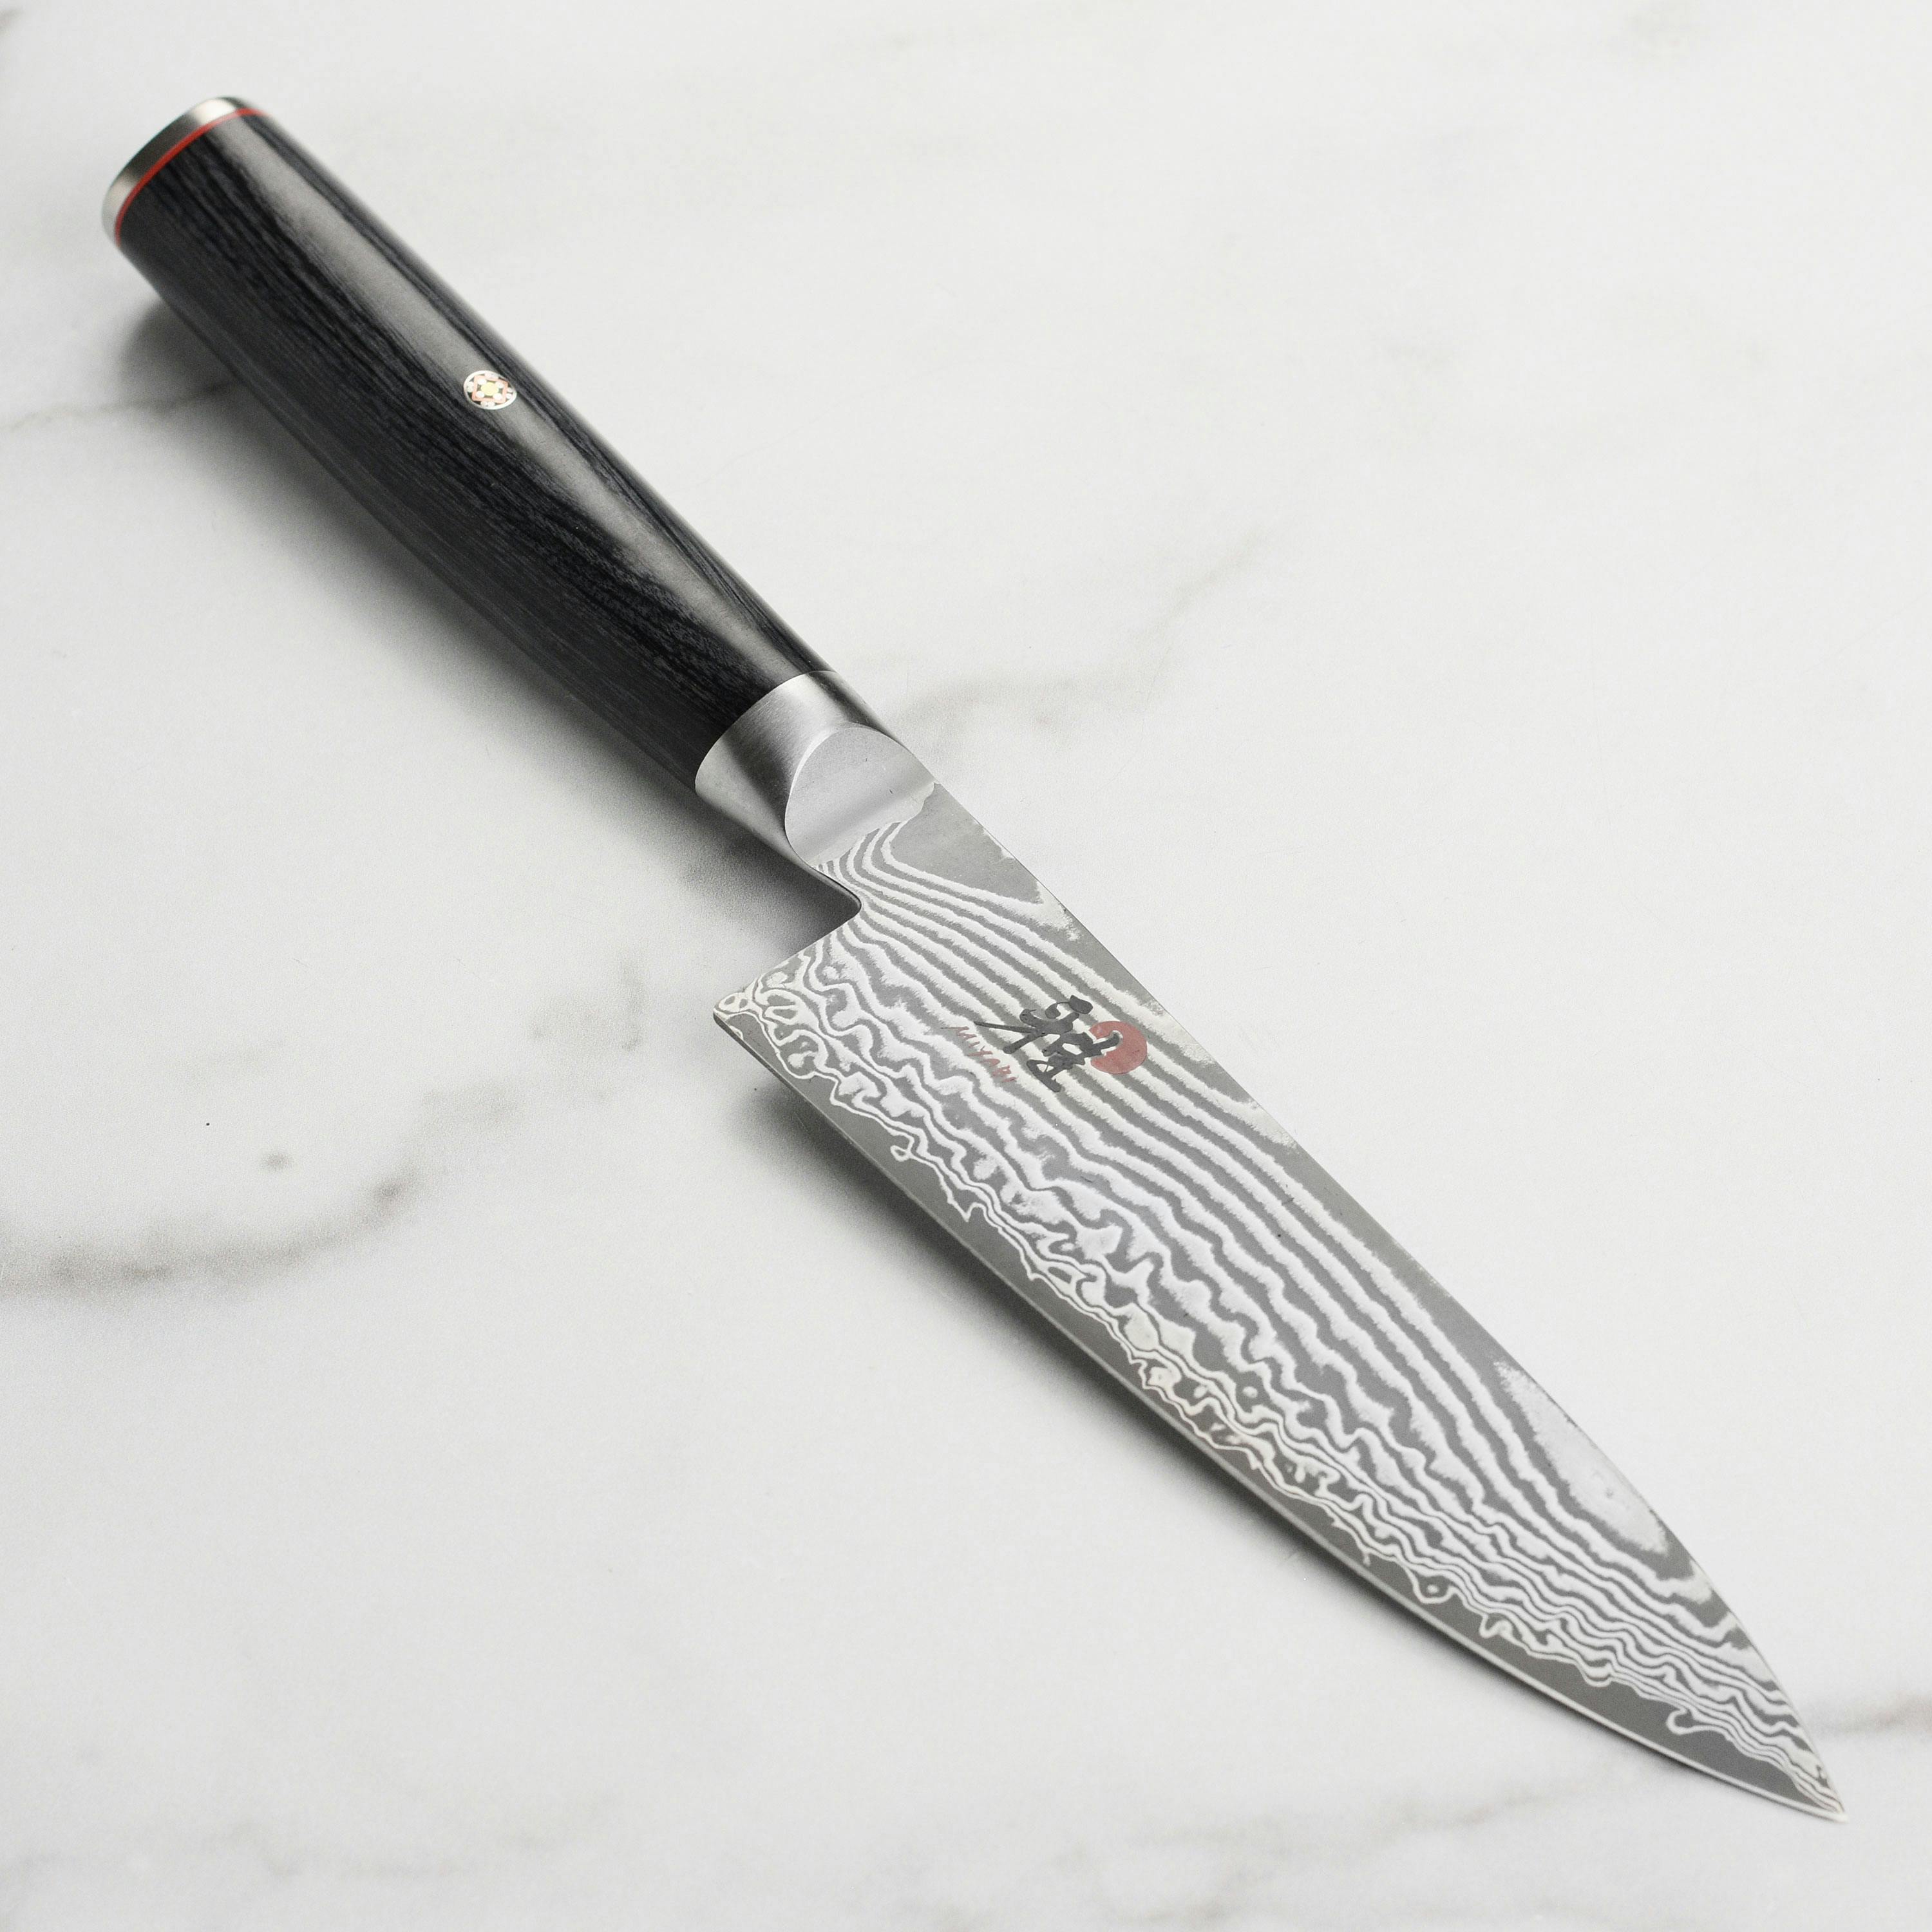 Miyabi Kaizen II Chef's Knife, 6"